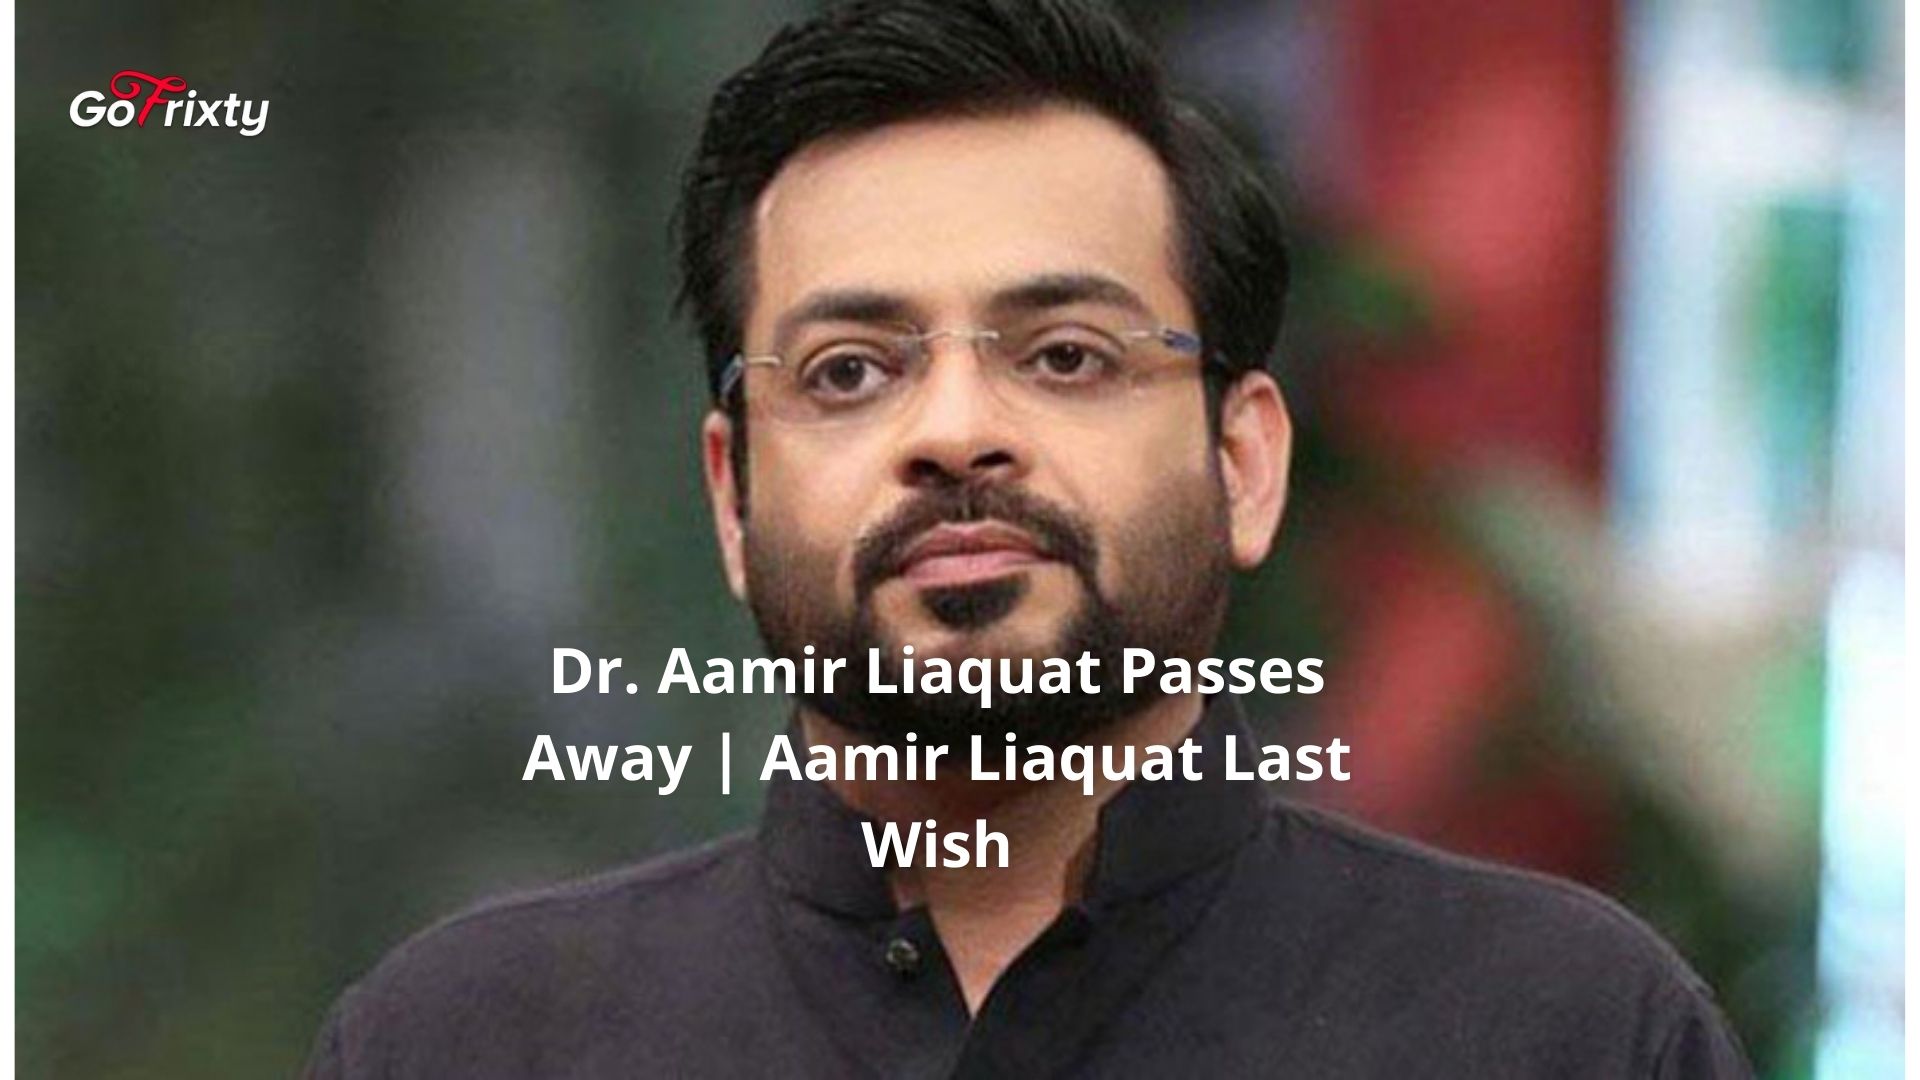 Dr. Aamir Liaquat Passes Away | Aamir Liaquat Last Wish